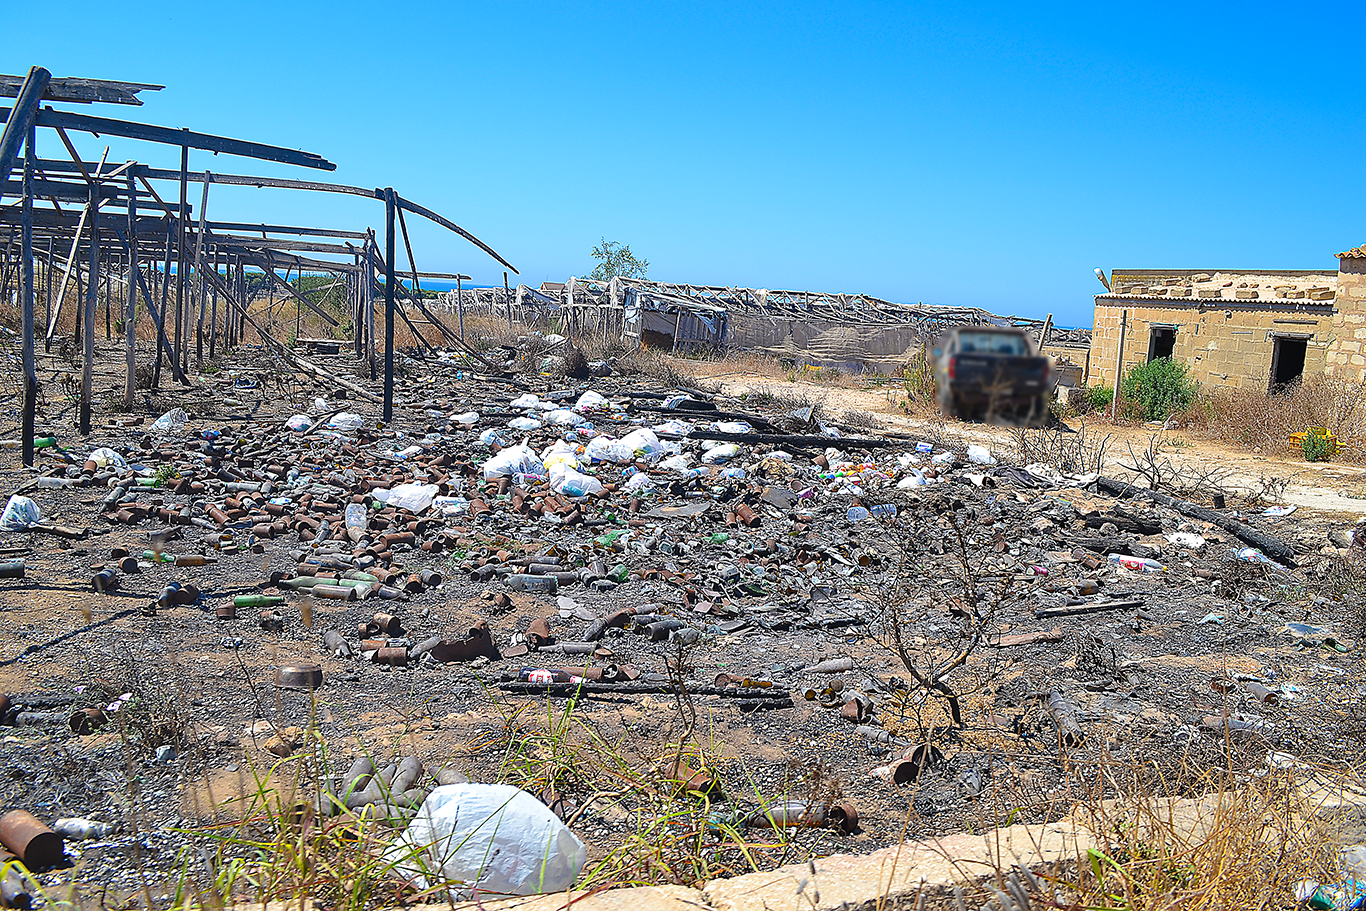  Torre di Mezzo, i rifiuti deturpano l’ambiente. Lettera di un turista: “Occupatevi dell’ordinario”